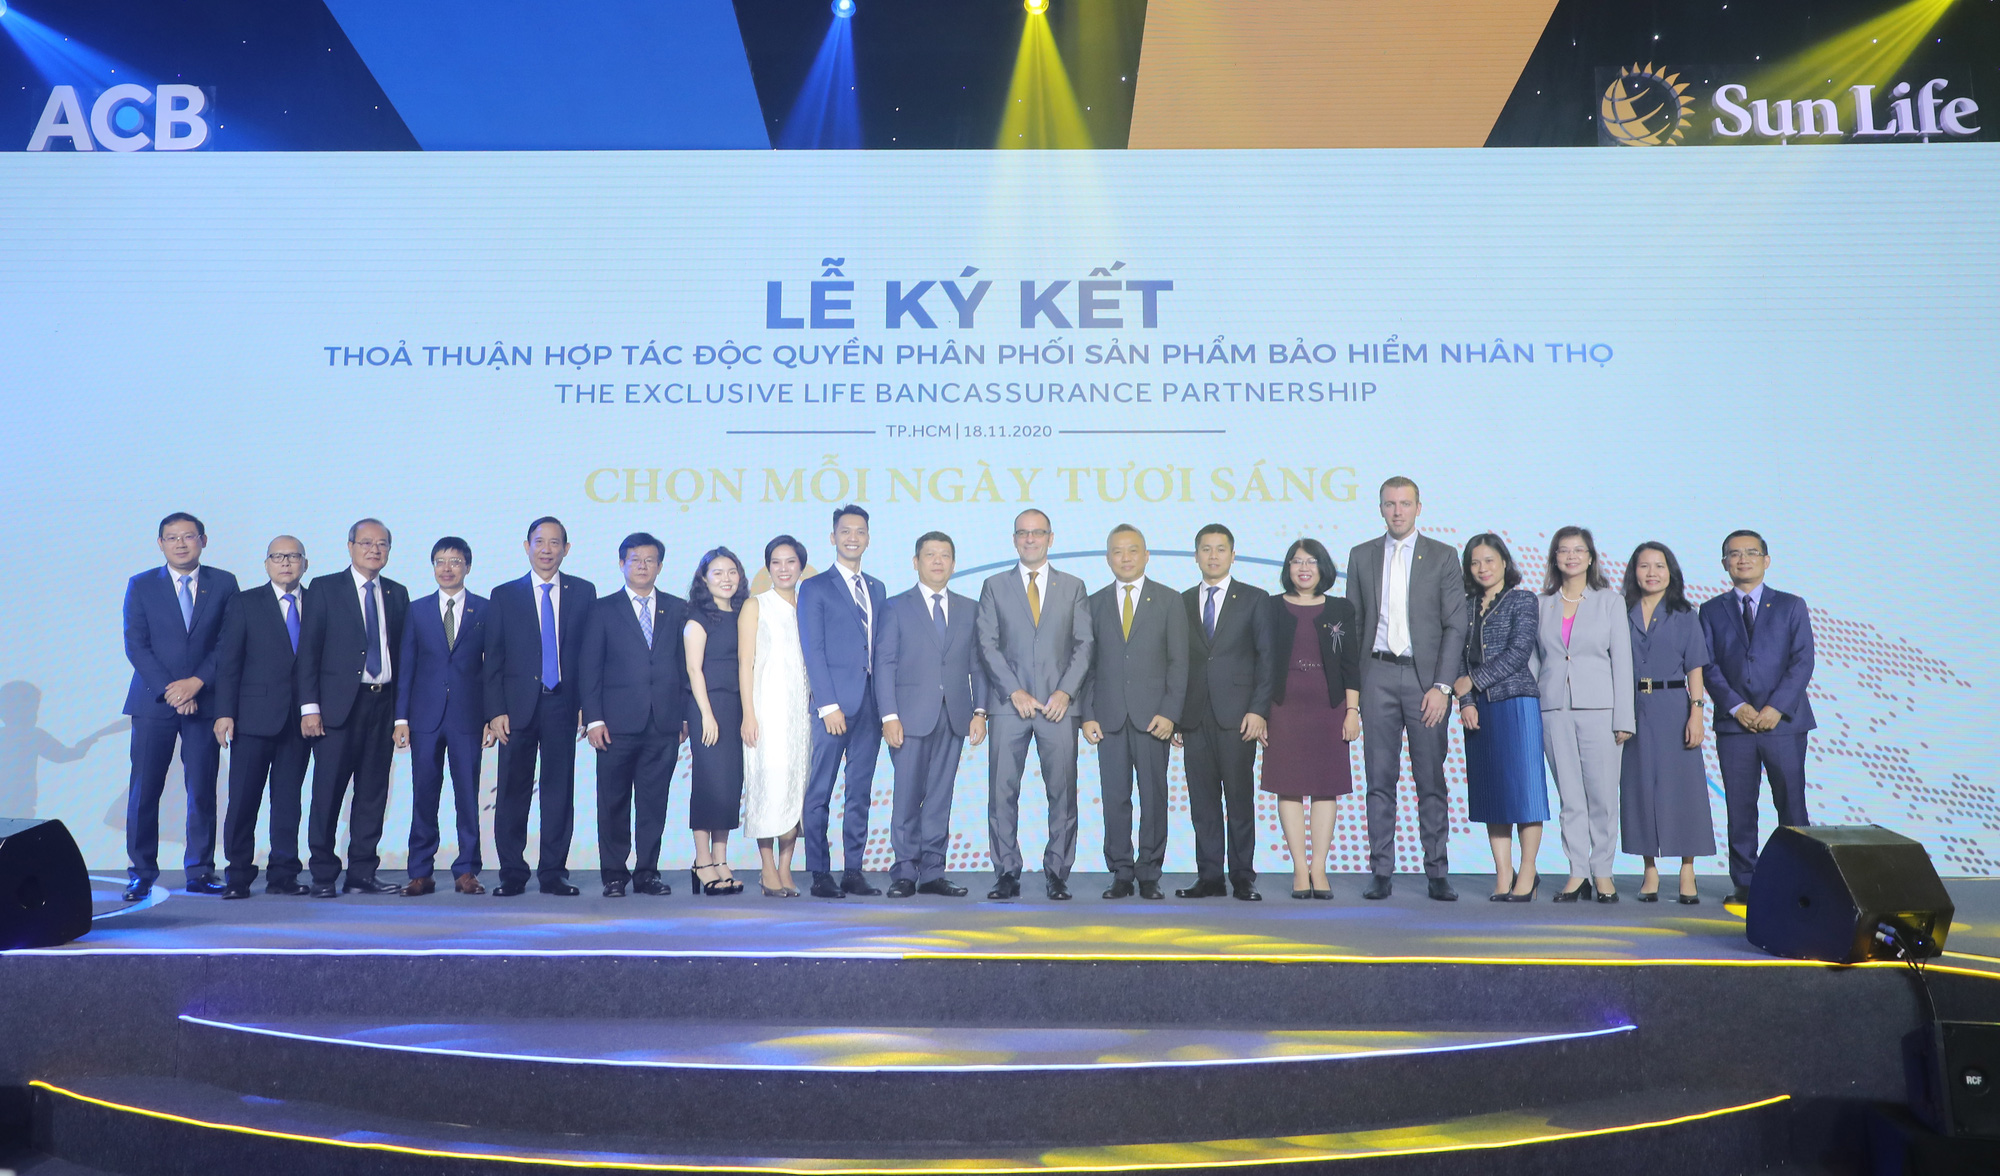 ACB bắt tay Sun Life Việt Nam bán bảo hiểm nhân thọ